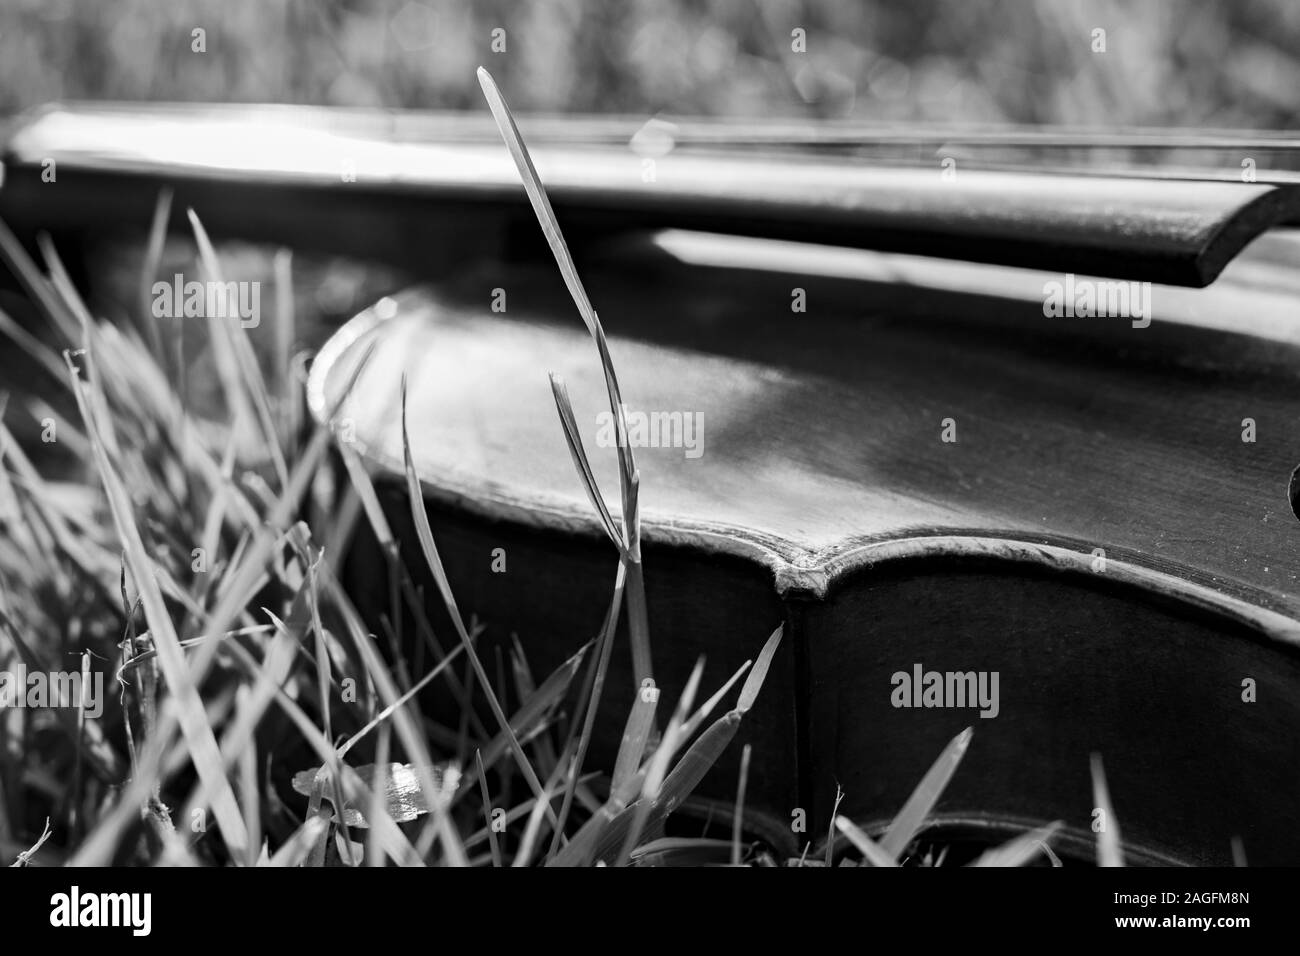 Gros plan en échelle de gris d'un violon posé sur une herbe sèche avec un arrière-plan flou Banque D'Images